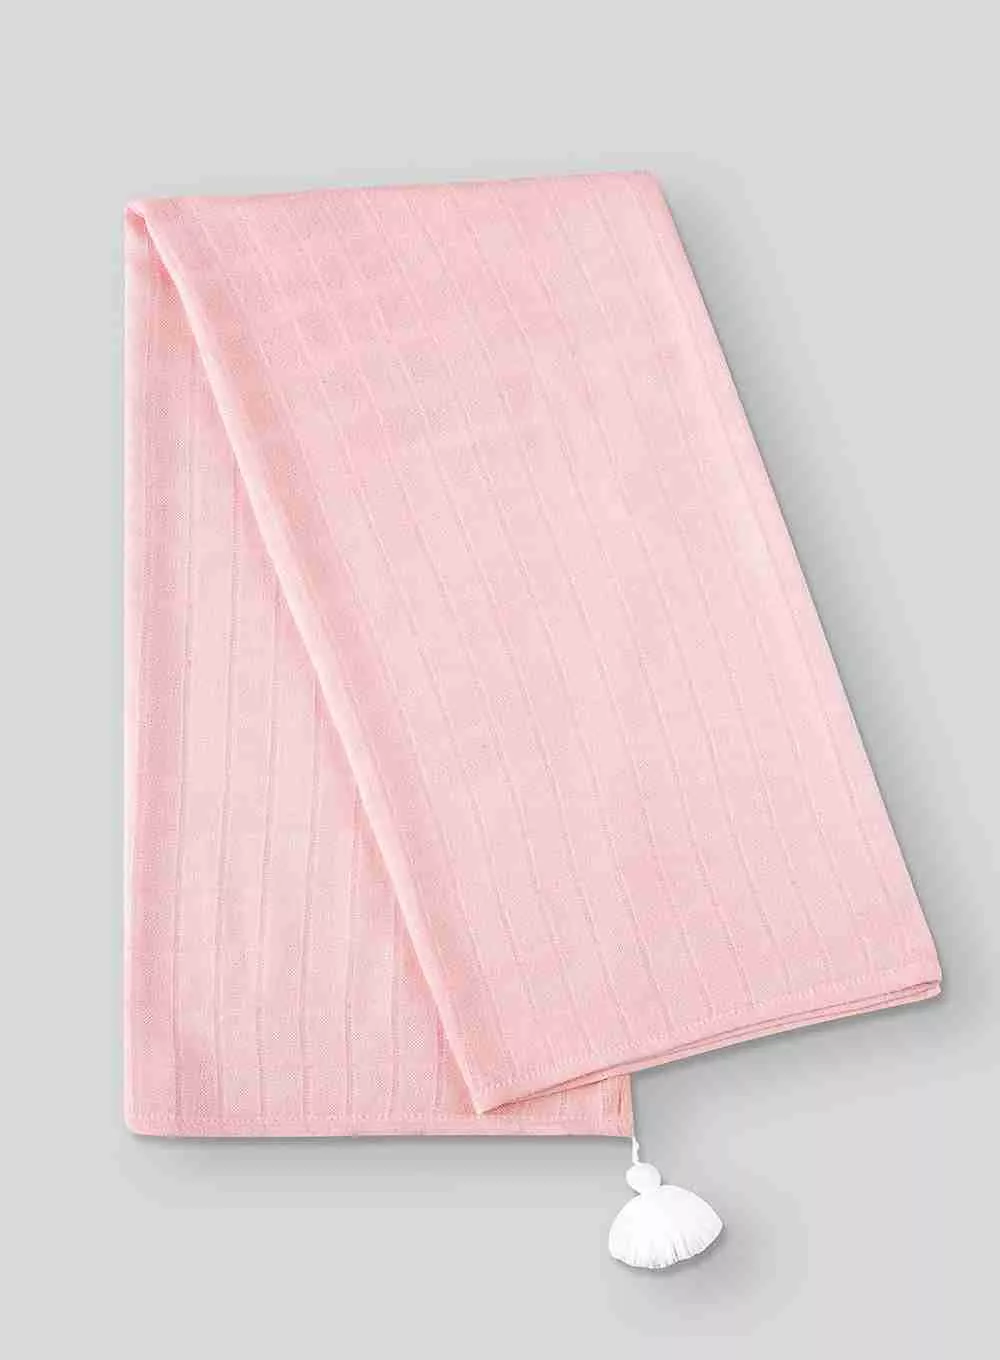 Couverture emmaillotage - couleur rose